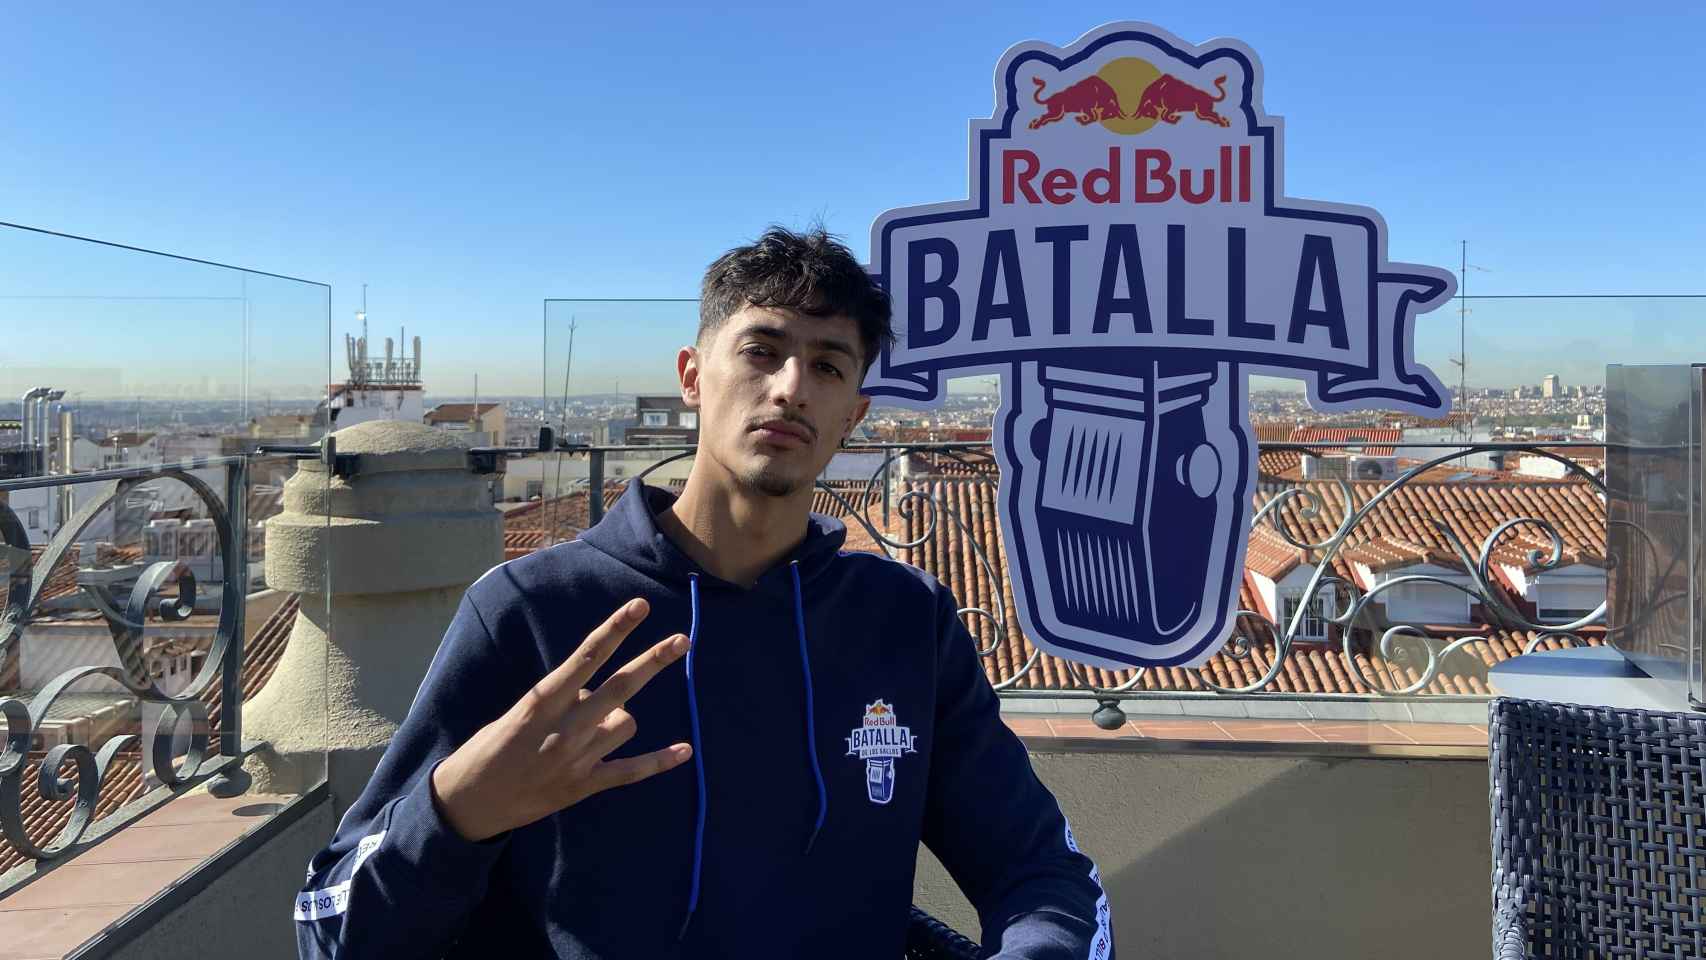 Tirpa posa delante del cartel de Red Bull Batalla para EL ESPAÑOL